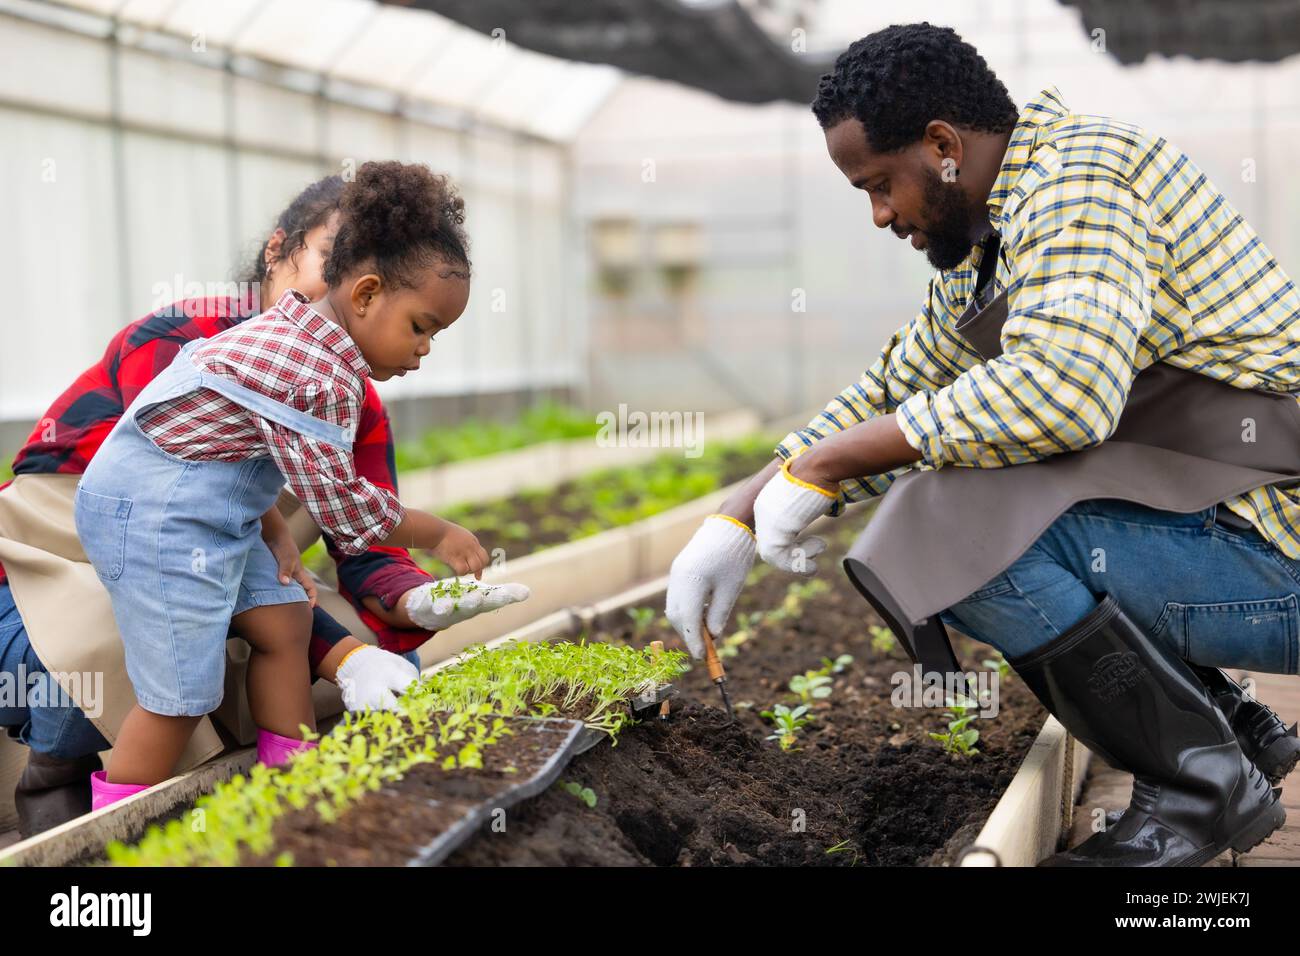 Afrikanische schwarze Kinderspielpflanze kleine Baumgartenarbeit auf Bauernhof mit Familie. Kinder, Papa, Mama, liebt Natur, oganische Landwirtschaft. Stockfoto